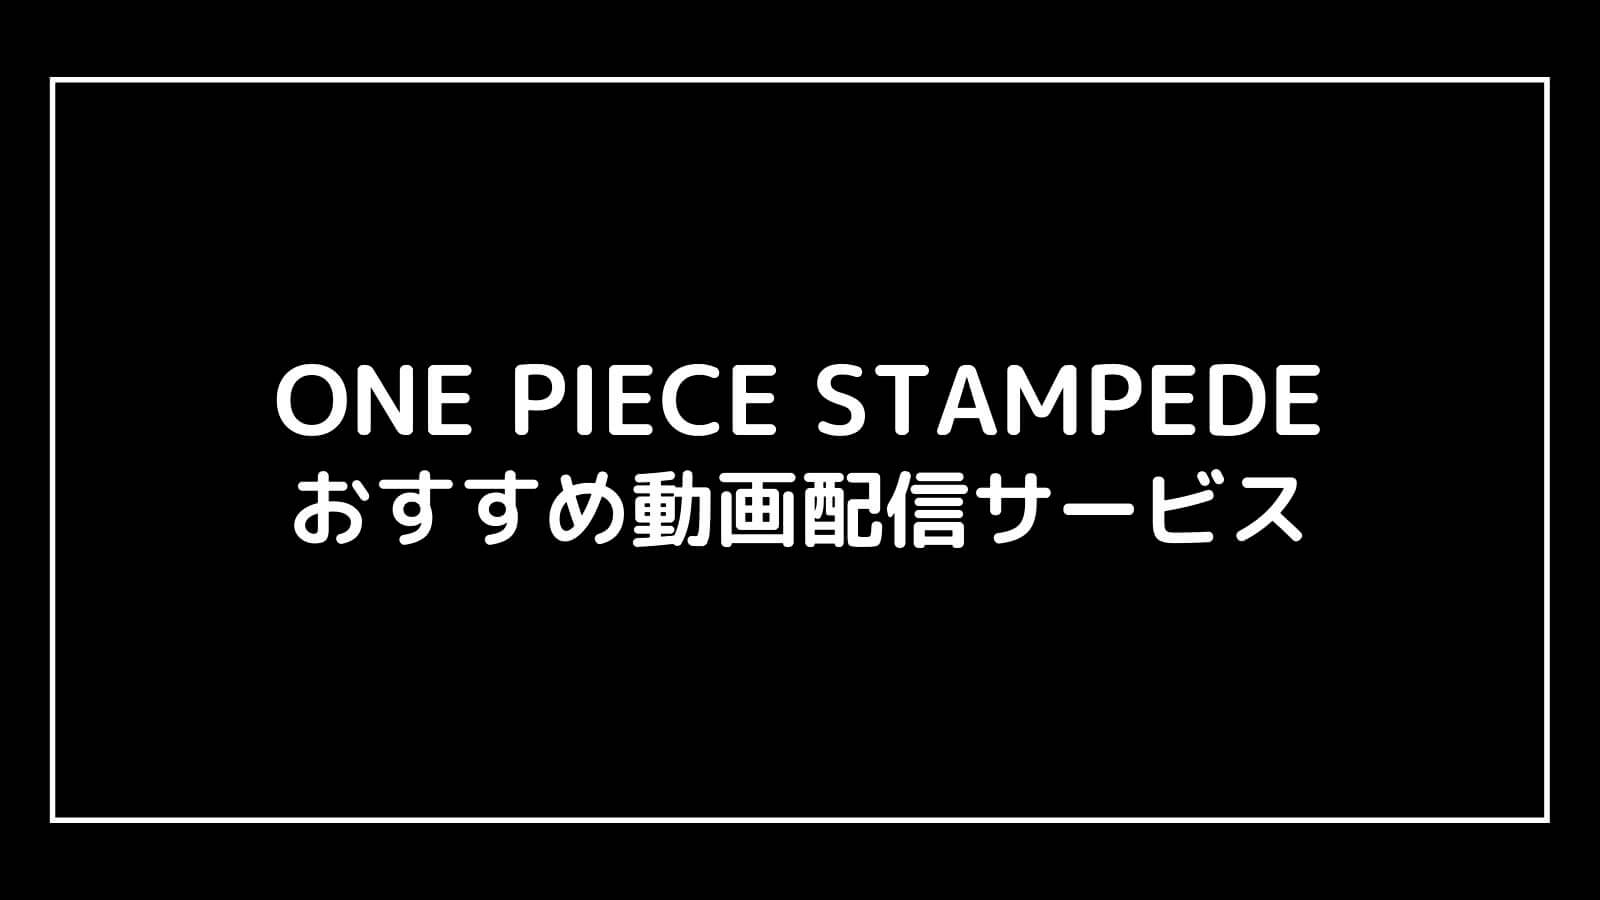 映画『ワンピース スタンピード』の無料動画配信をフル視聴できるおすすめサブスクまとめ【ONE PIECE STAMPEDE】